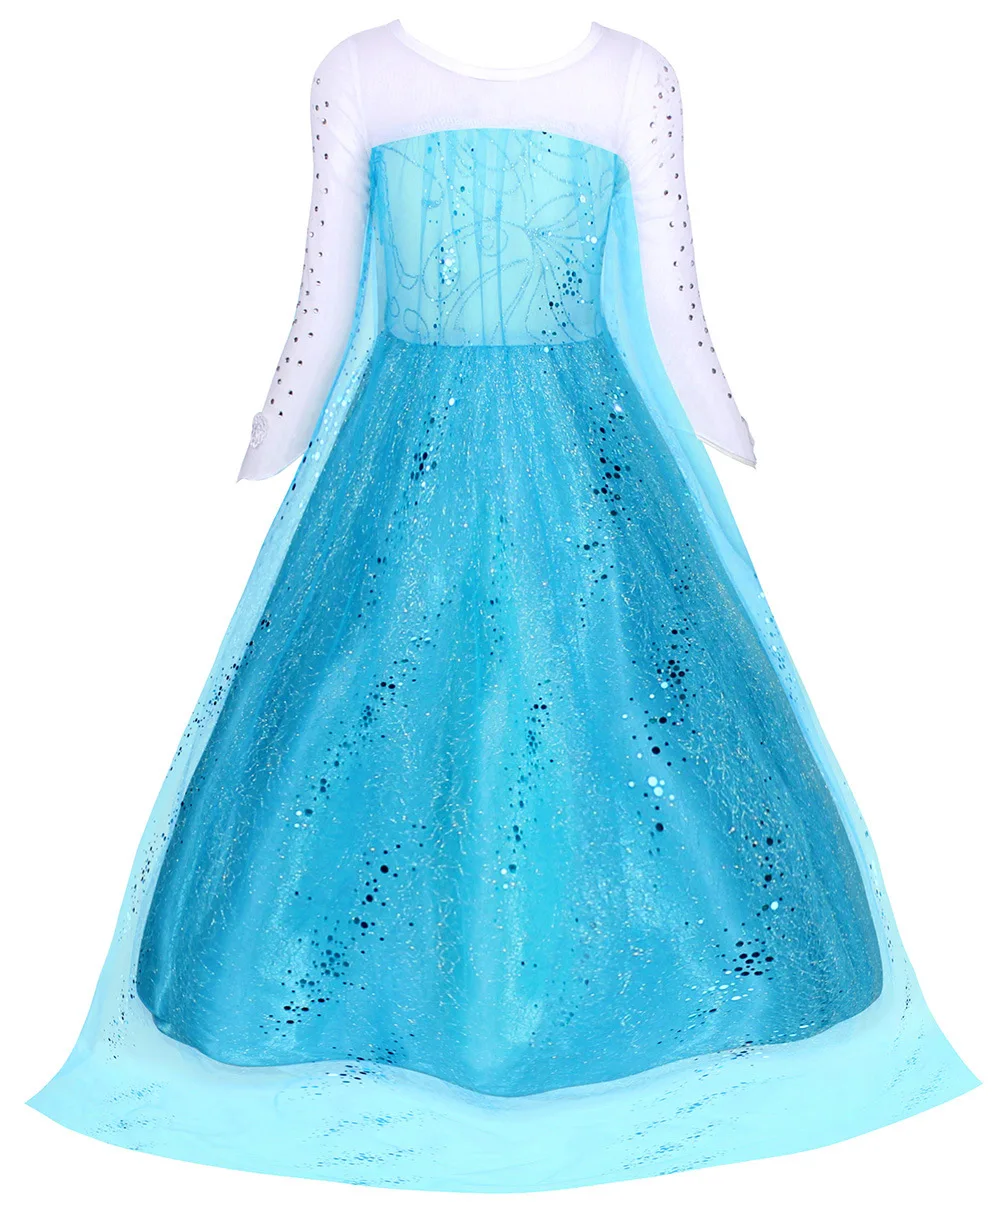 KEAIYOUHUO Платье принцессы для девочек 3-10 лет, костюм для косплея, блестки, Детские роскошные вечерние платья, подарок детям на День Рождения, бальные платья 4